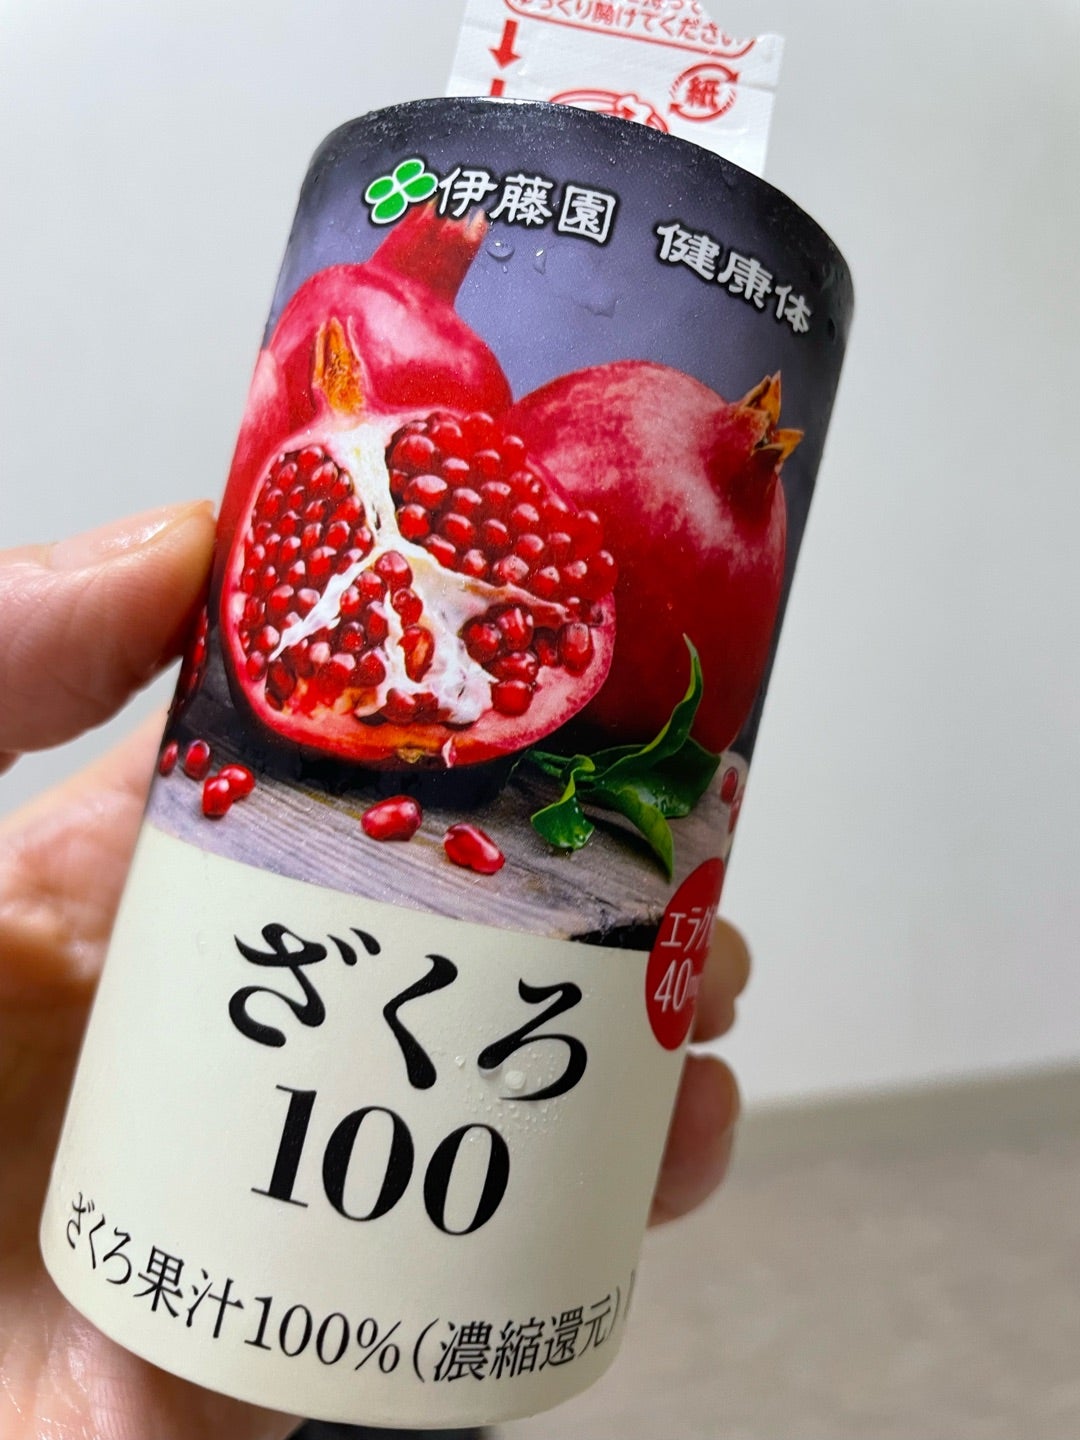 ザクロジュース 伊藤園 美容 健康 100% 長寿 ビタミン 美白 青汁 - 酒